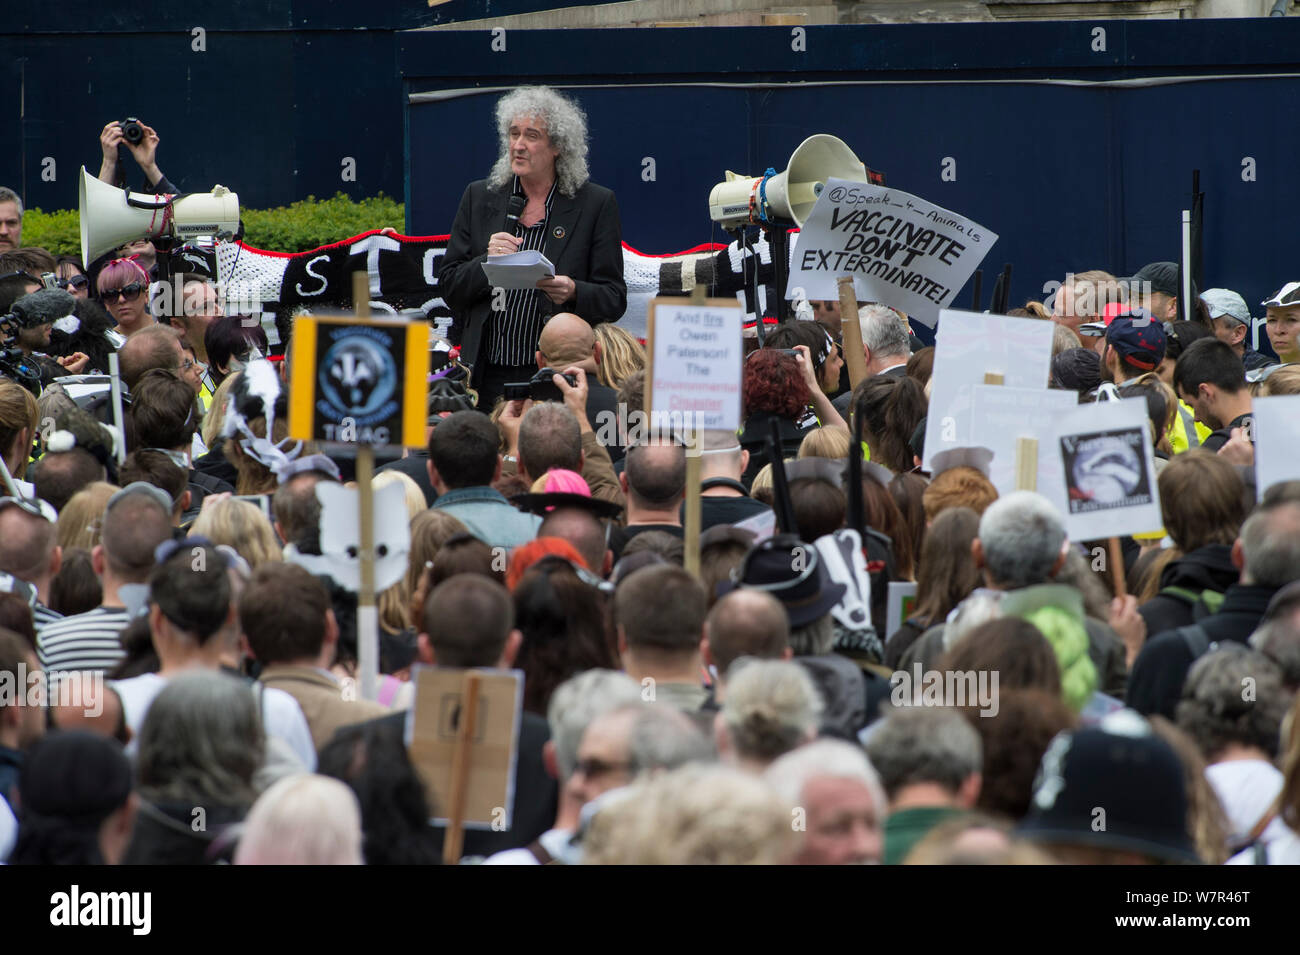 Rock Star et activiste Brian peut adresser au blaireau marcheurs anti réforme mars, Londres, 1er juin 2013. Banque D'Images